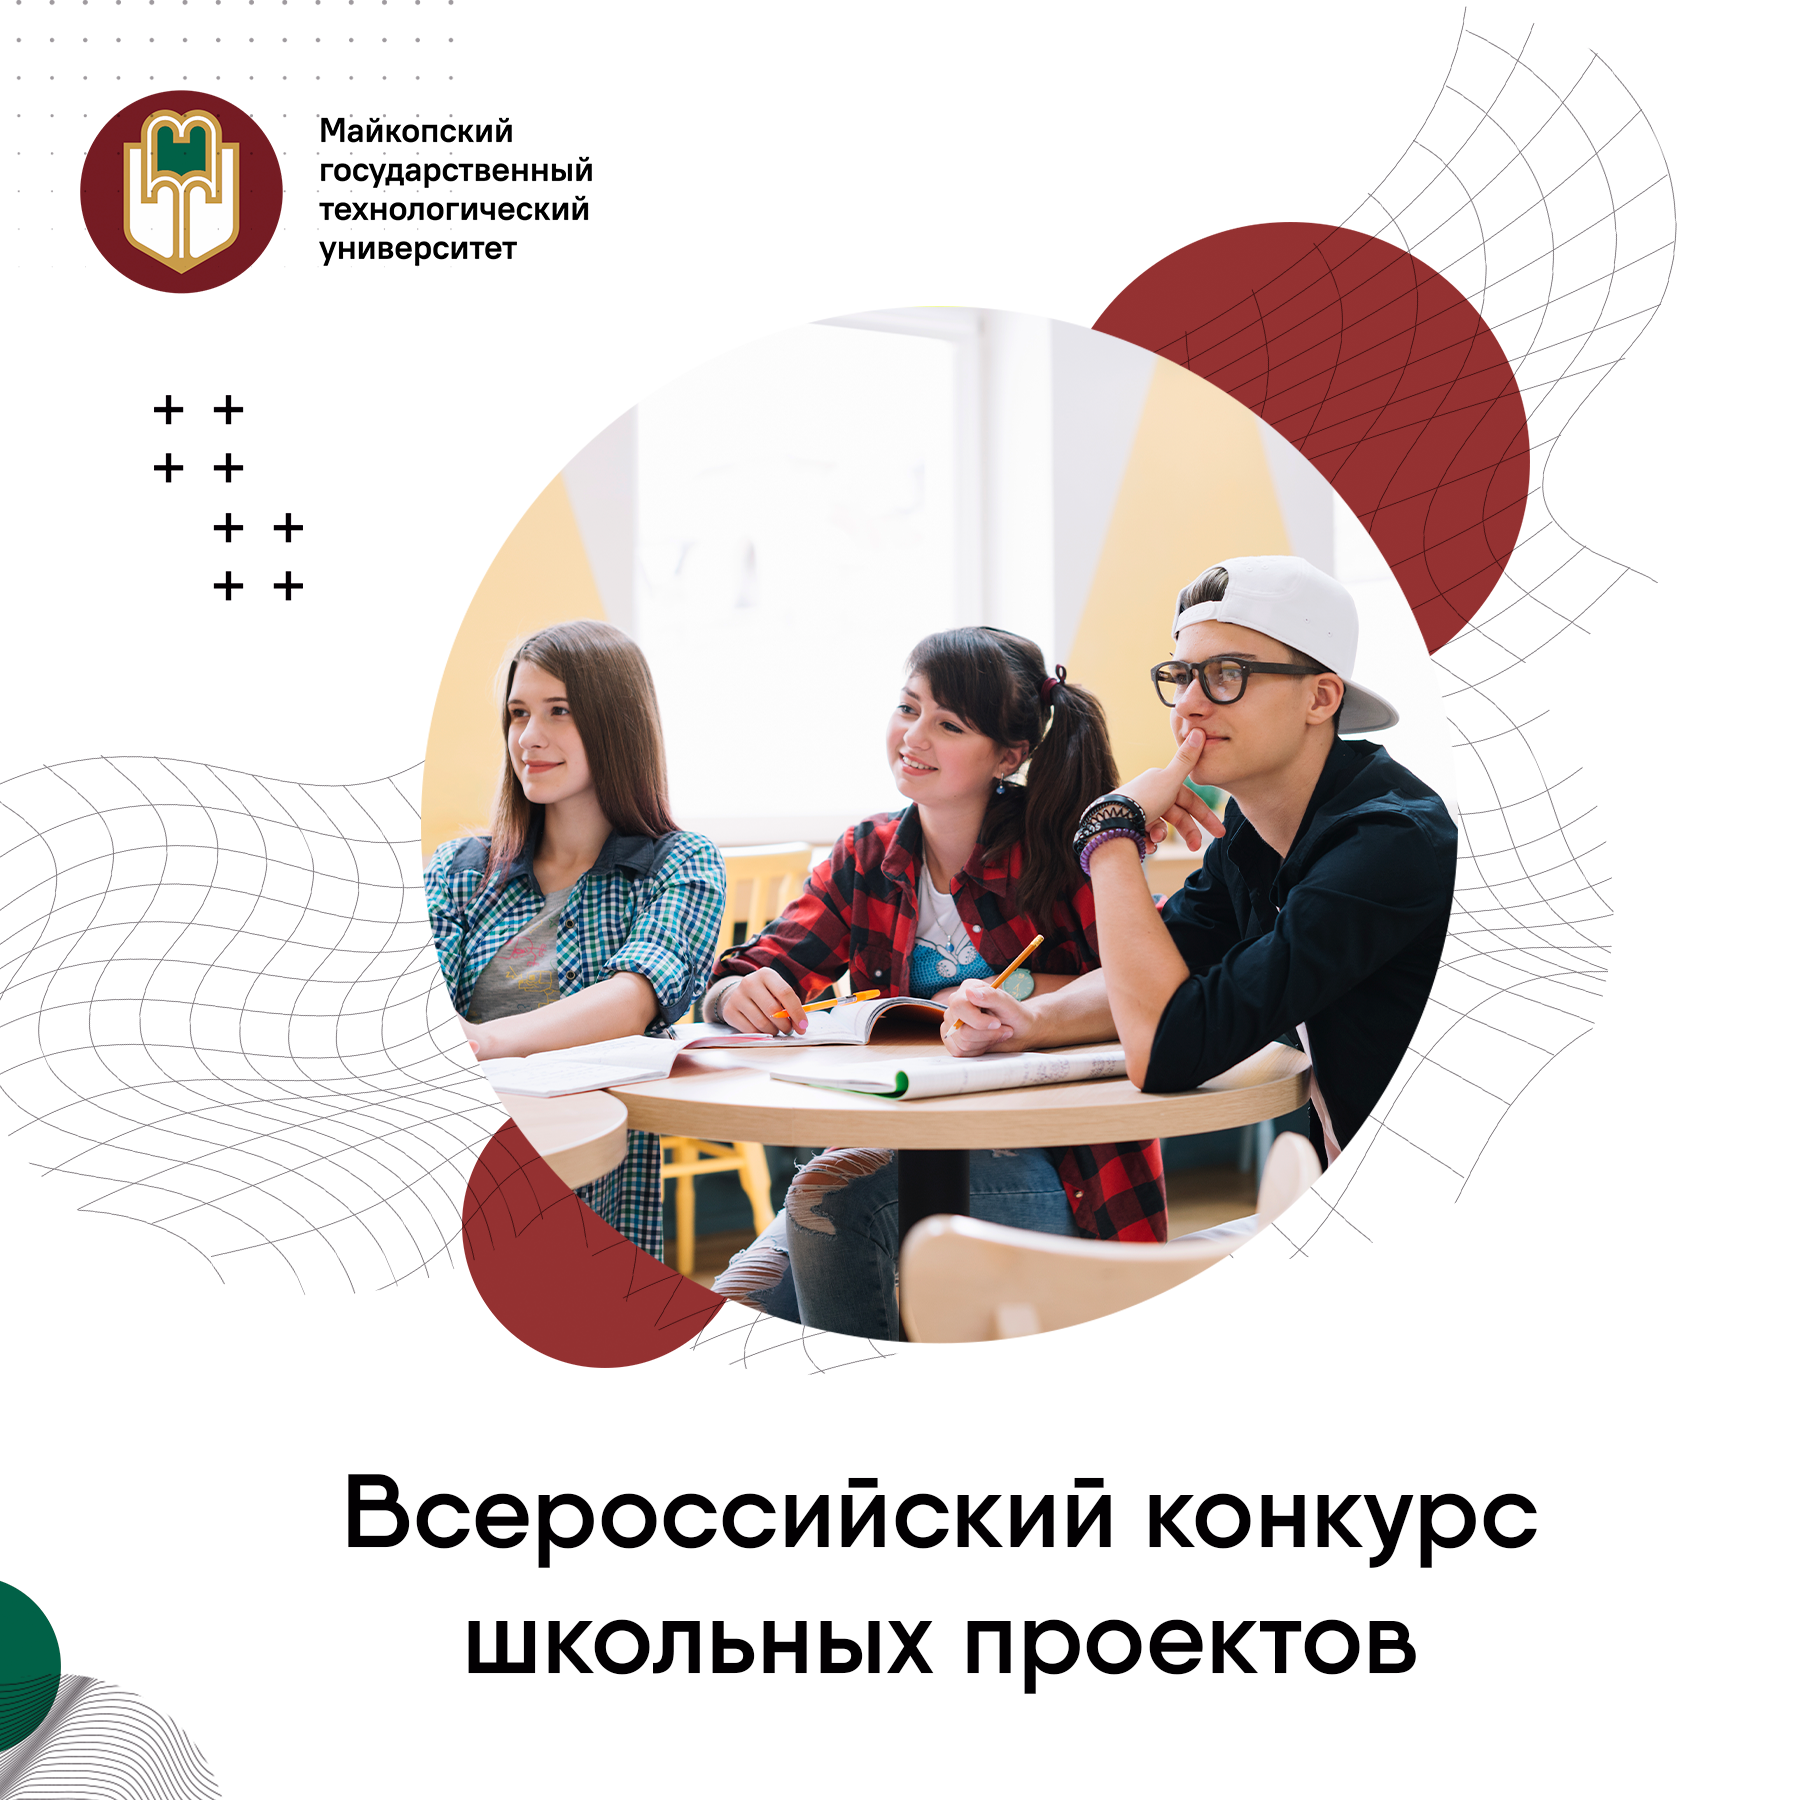 Запуск Всероссийского конкурса школьных проектов профильных классов!